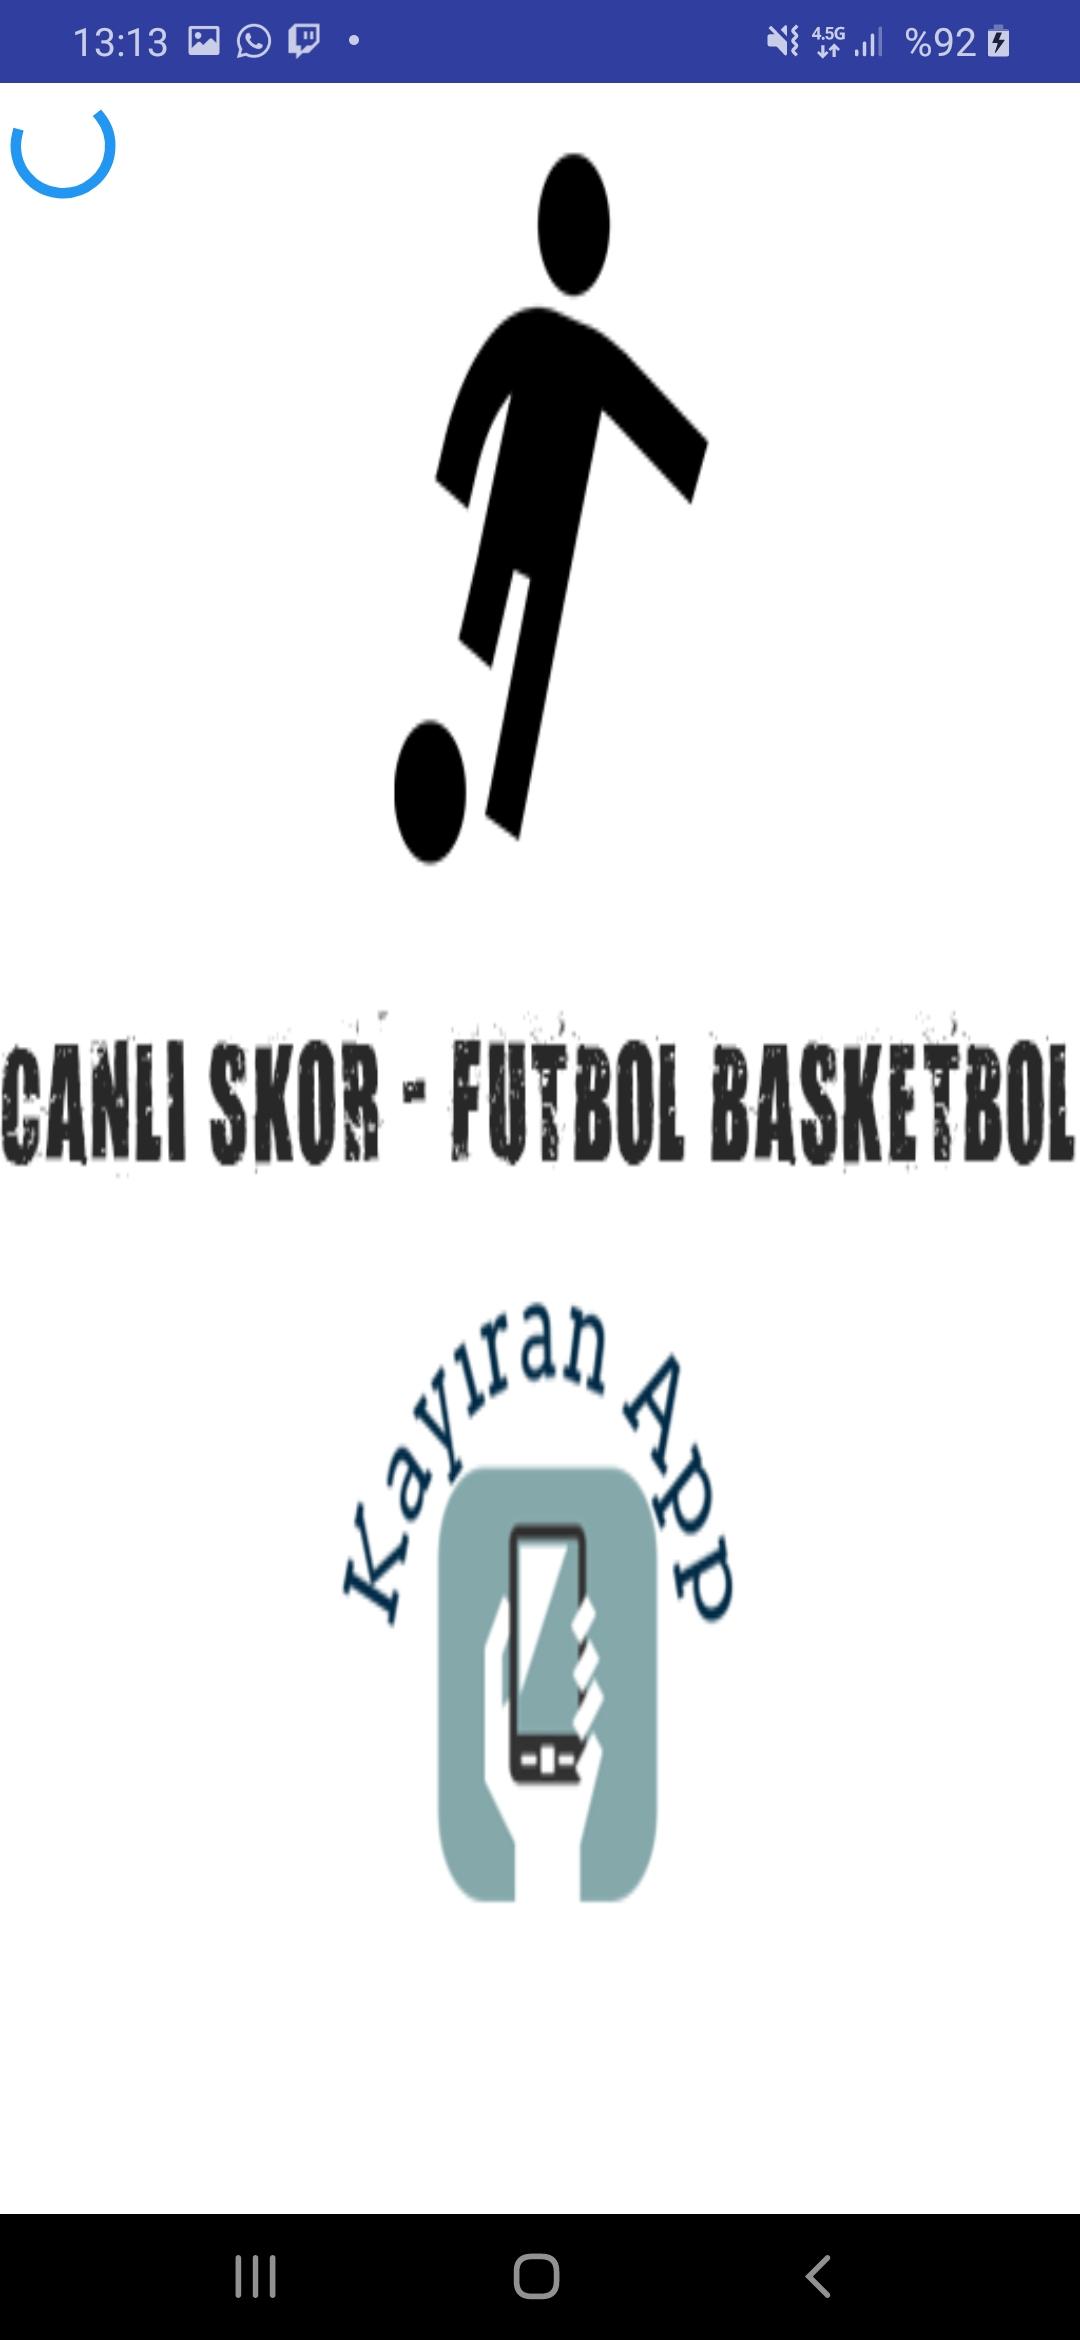 Canlı Skor - Futbol Basketbol APK للاندرويد تنزيل